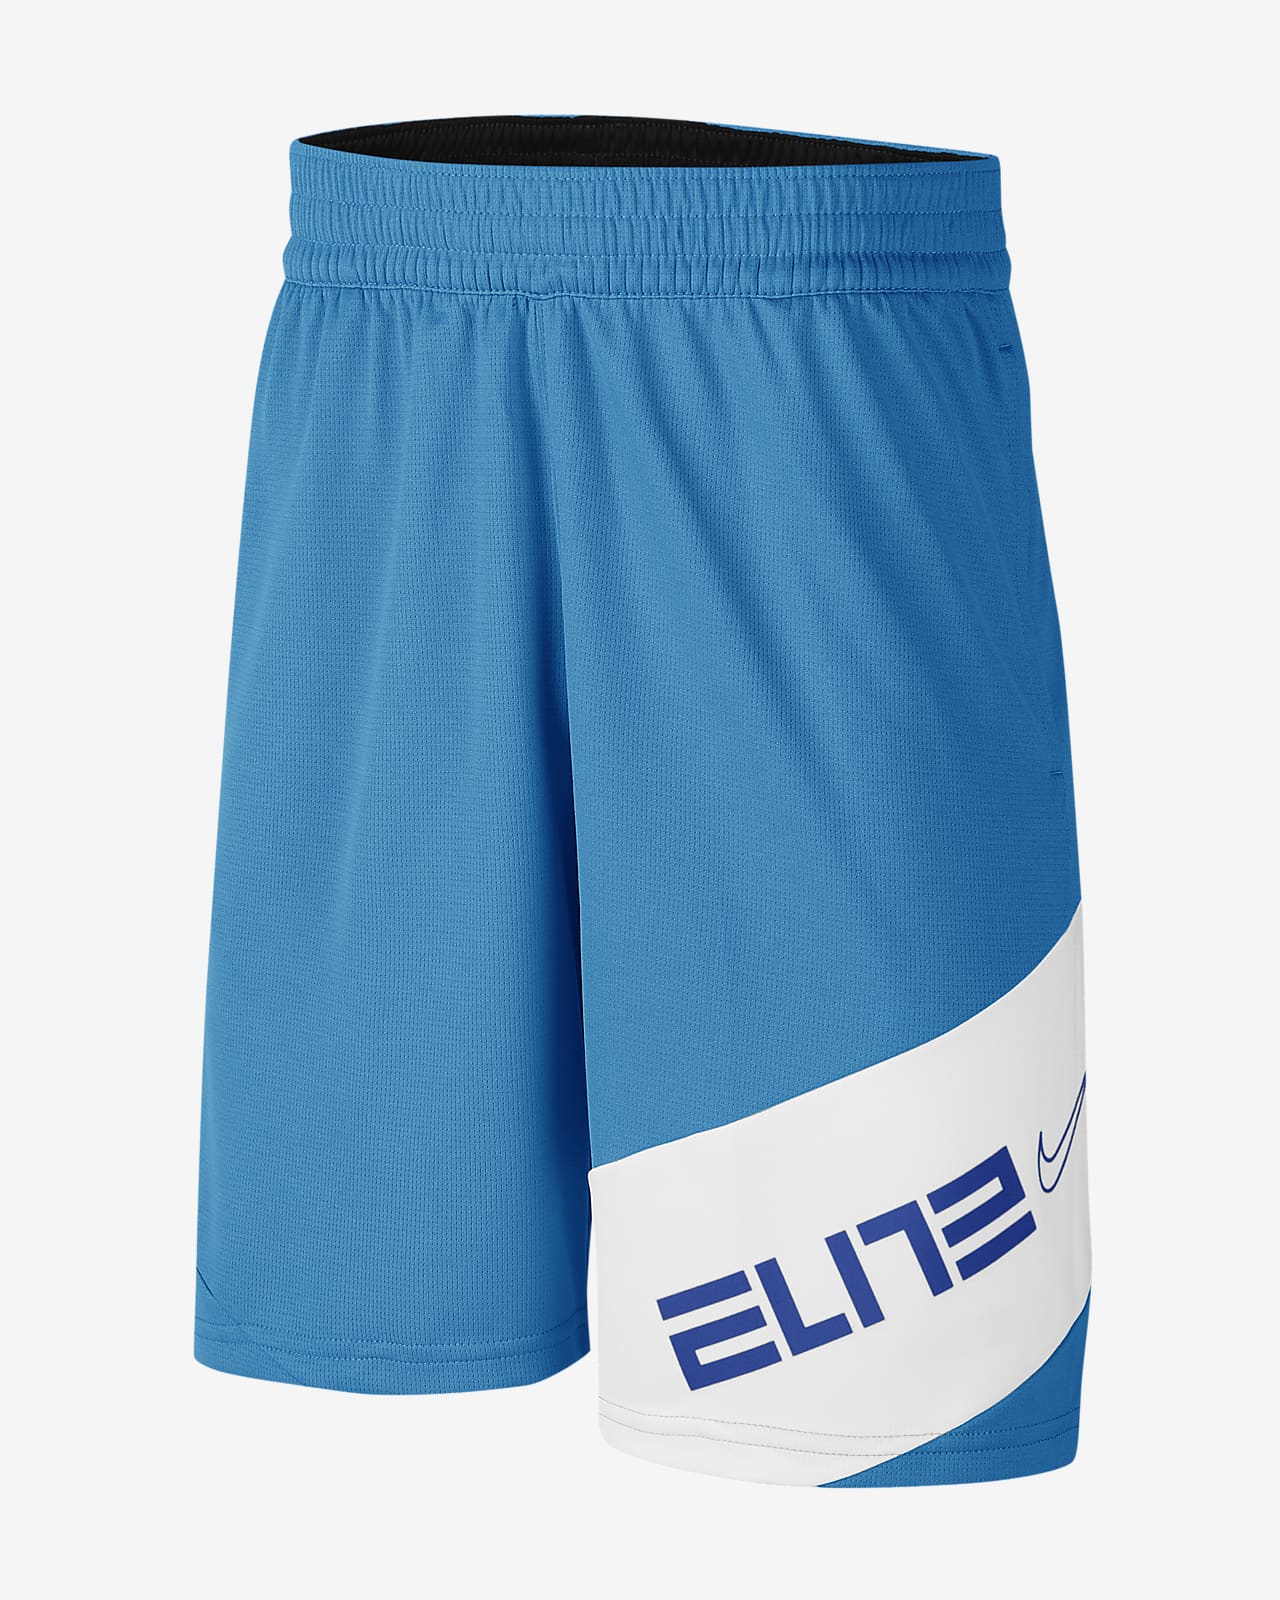 nike elite shorts on sale